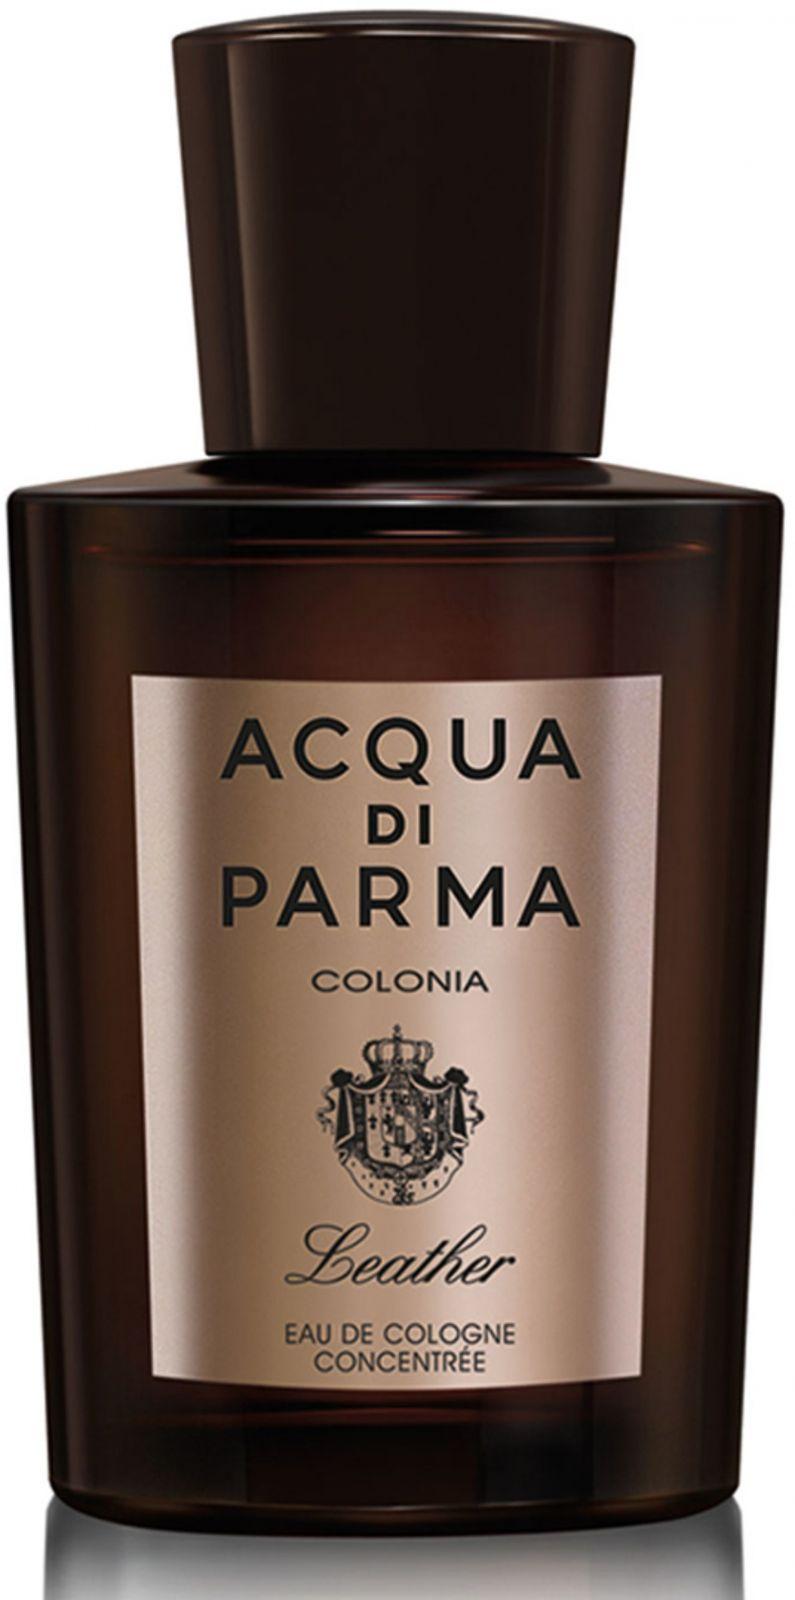 Leather Eau de Parfum Acqua di Parma perfume - a fragrance for